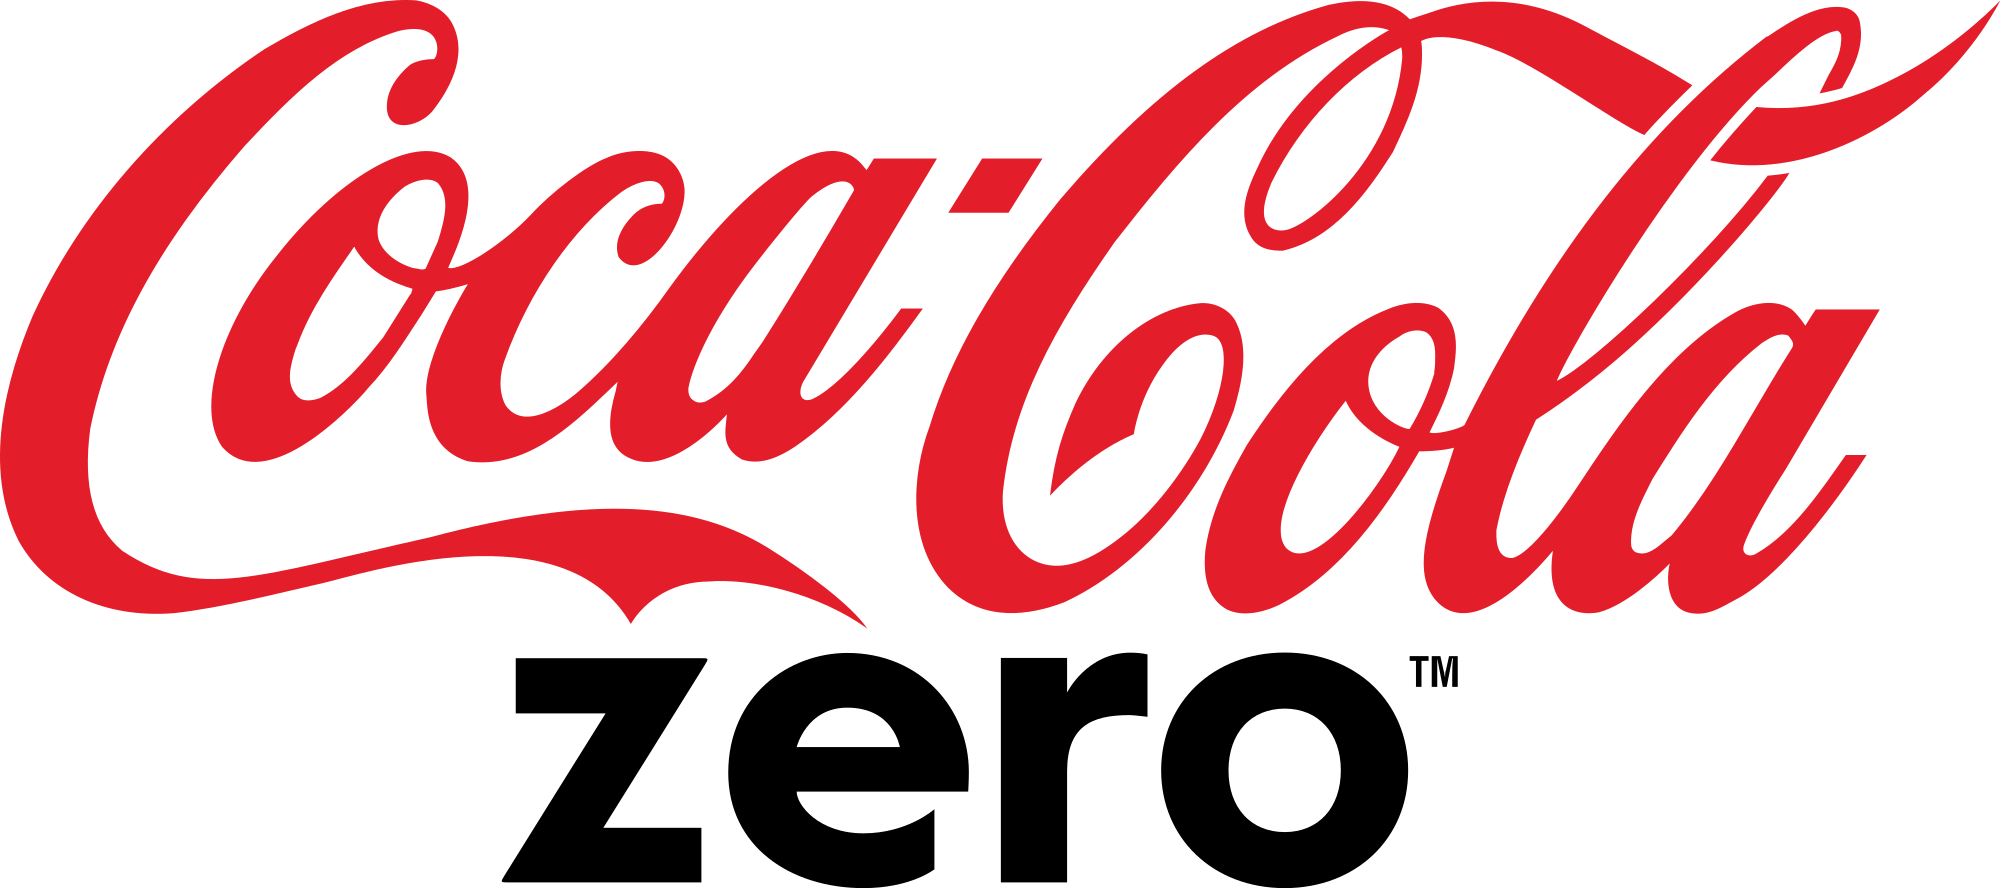 Coca-Cola Zero Logo - File:Coca-Cola Zero logo.svg - Wikimedia Commons